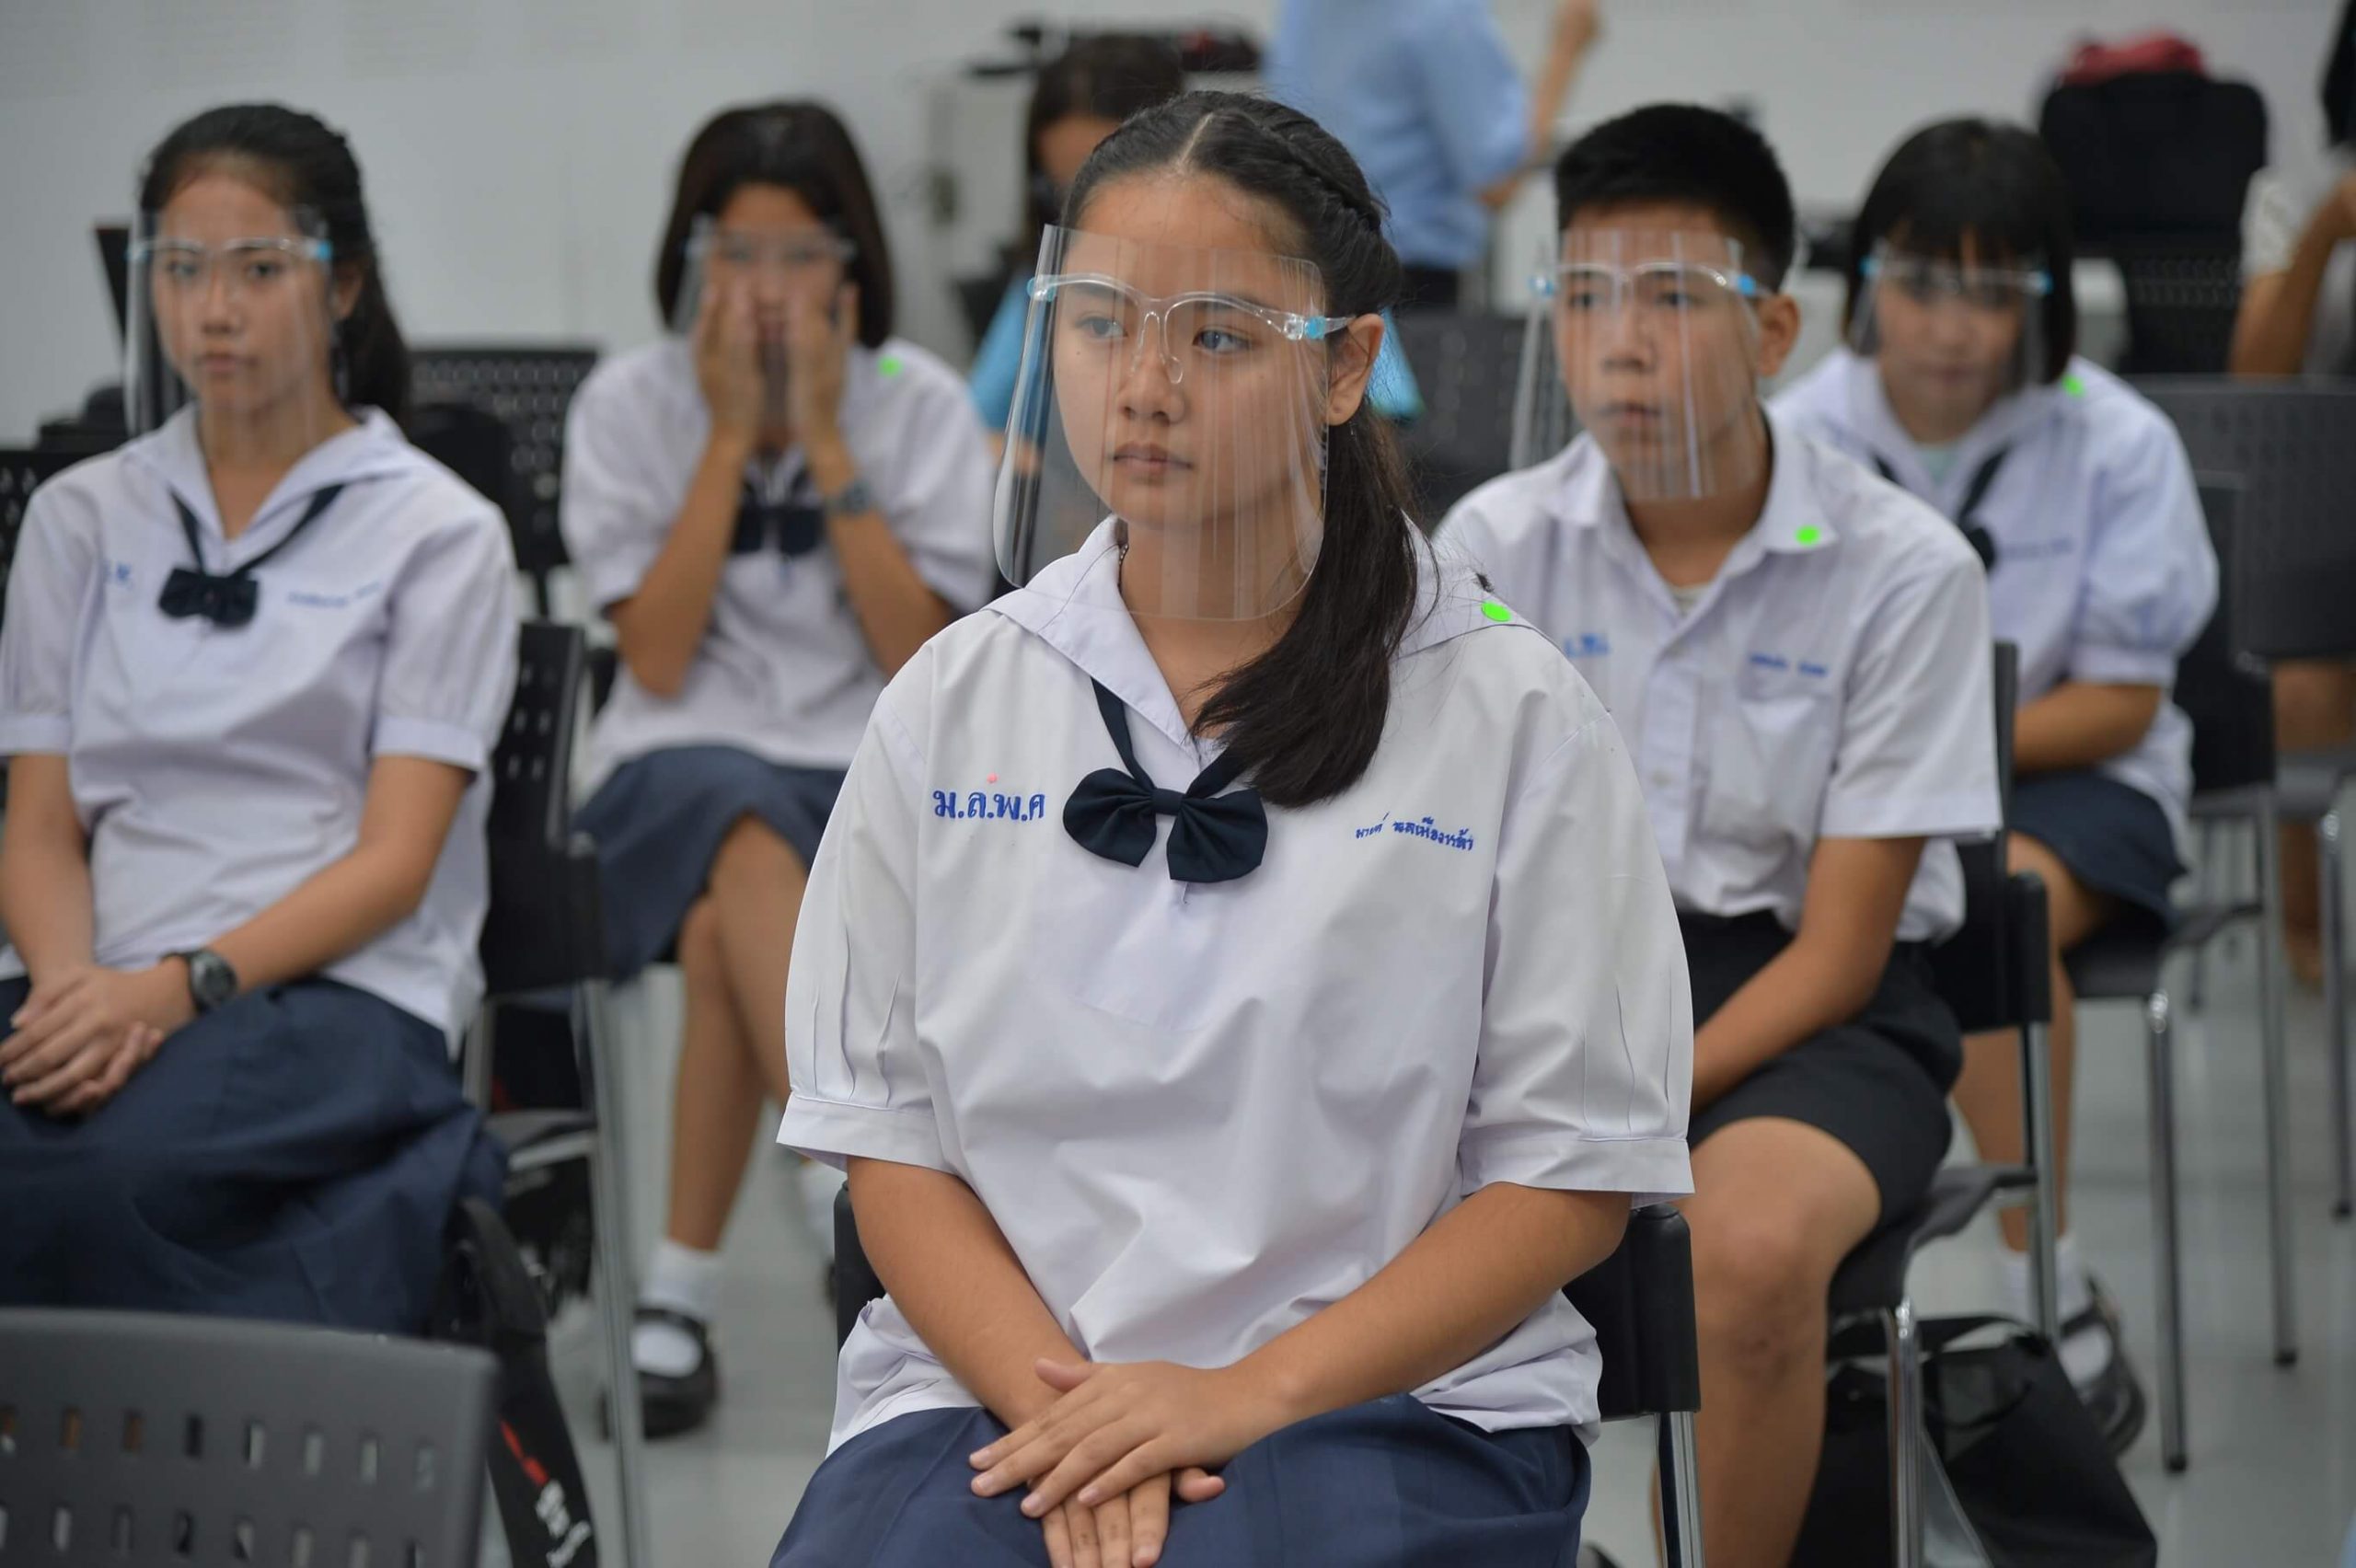 มิตซูบิชิ มอเตอร์ส ประเทศไทย มอบทุนการศึกษา ประจำปี 2563 เพื่อโอกาสทางการศึกษาแก่เด็กนักเรียน